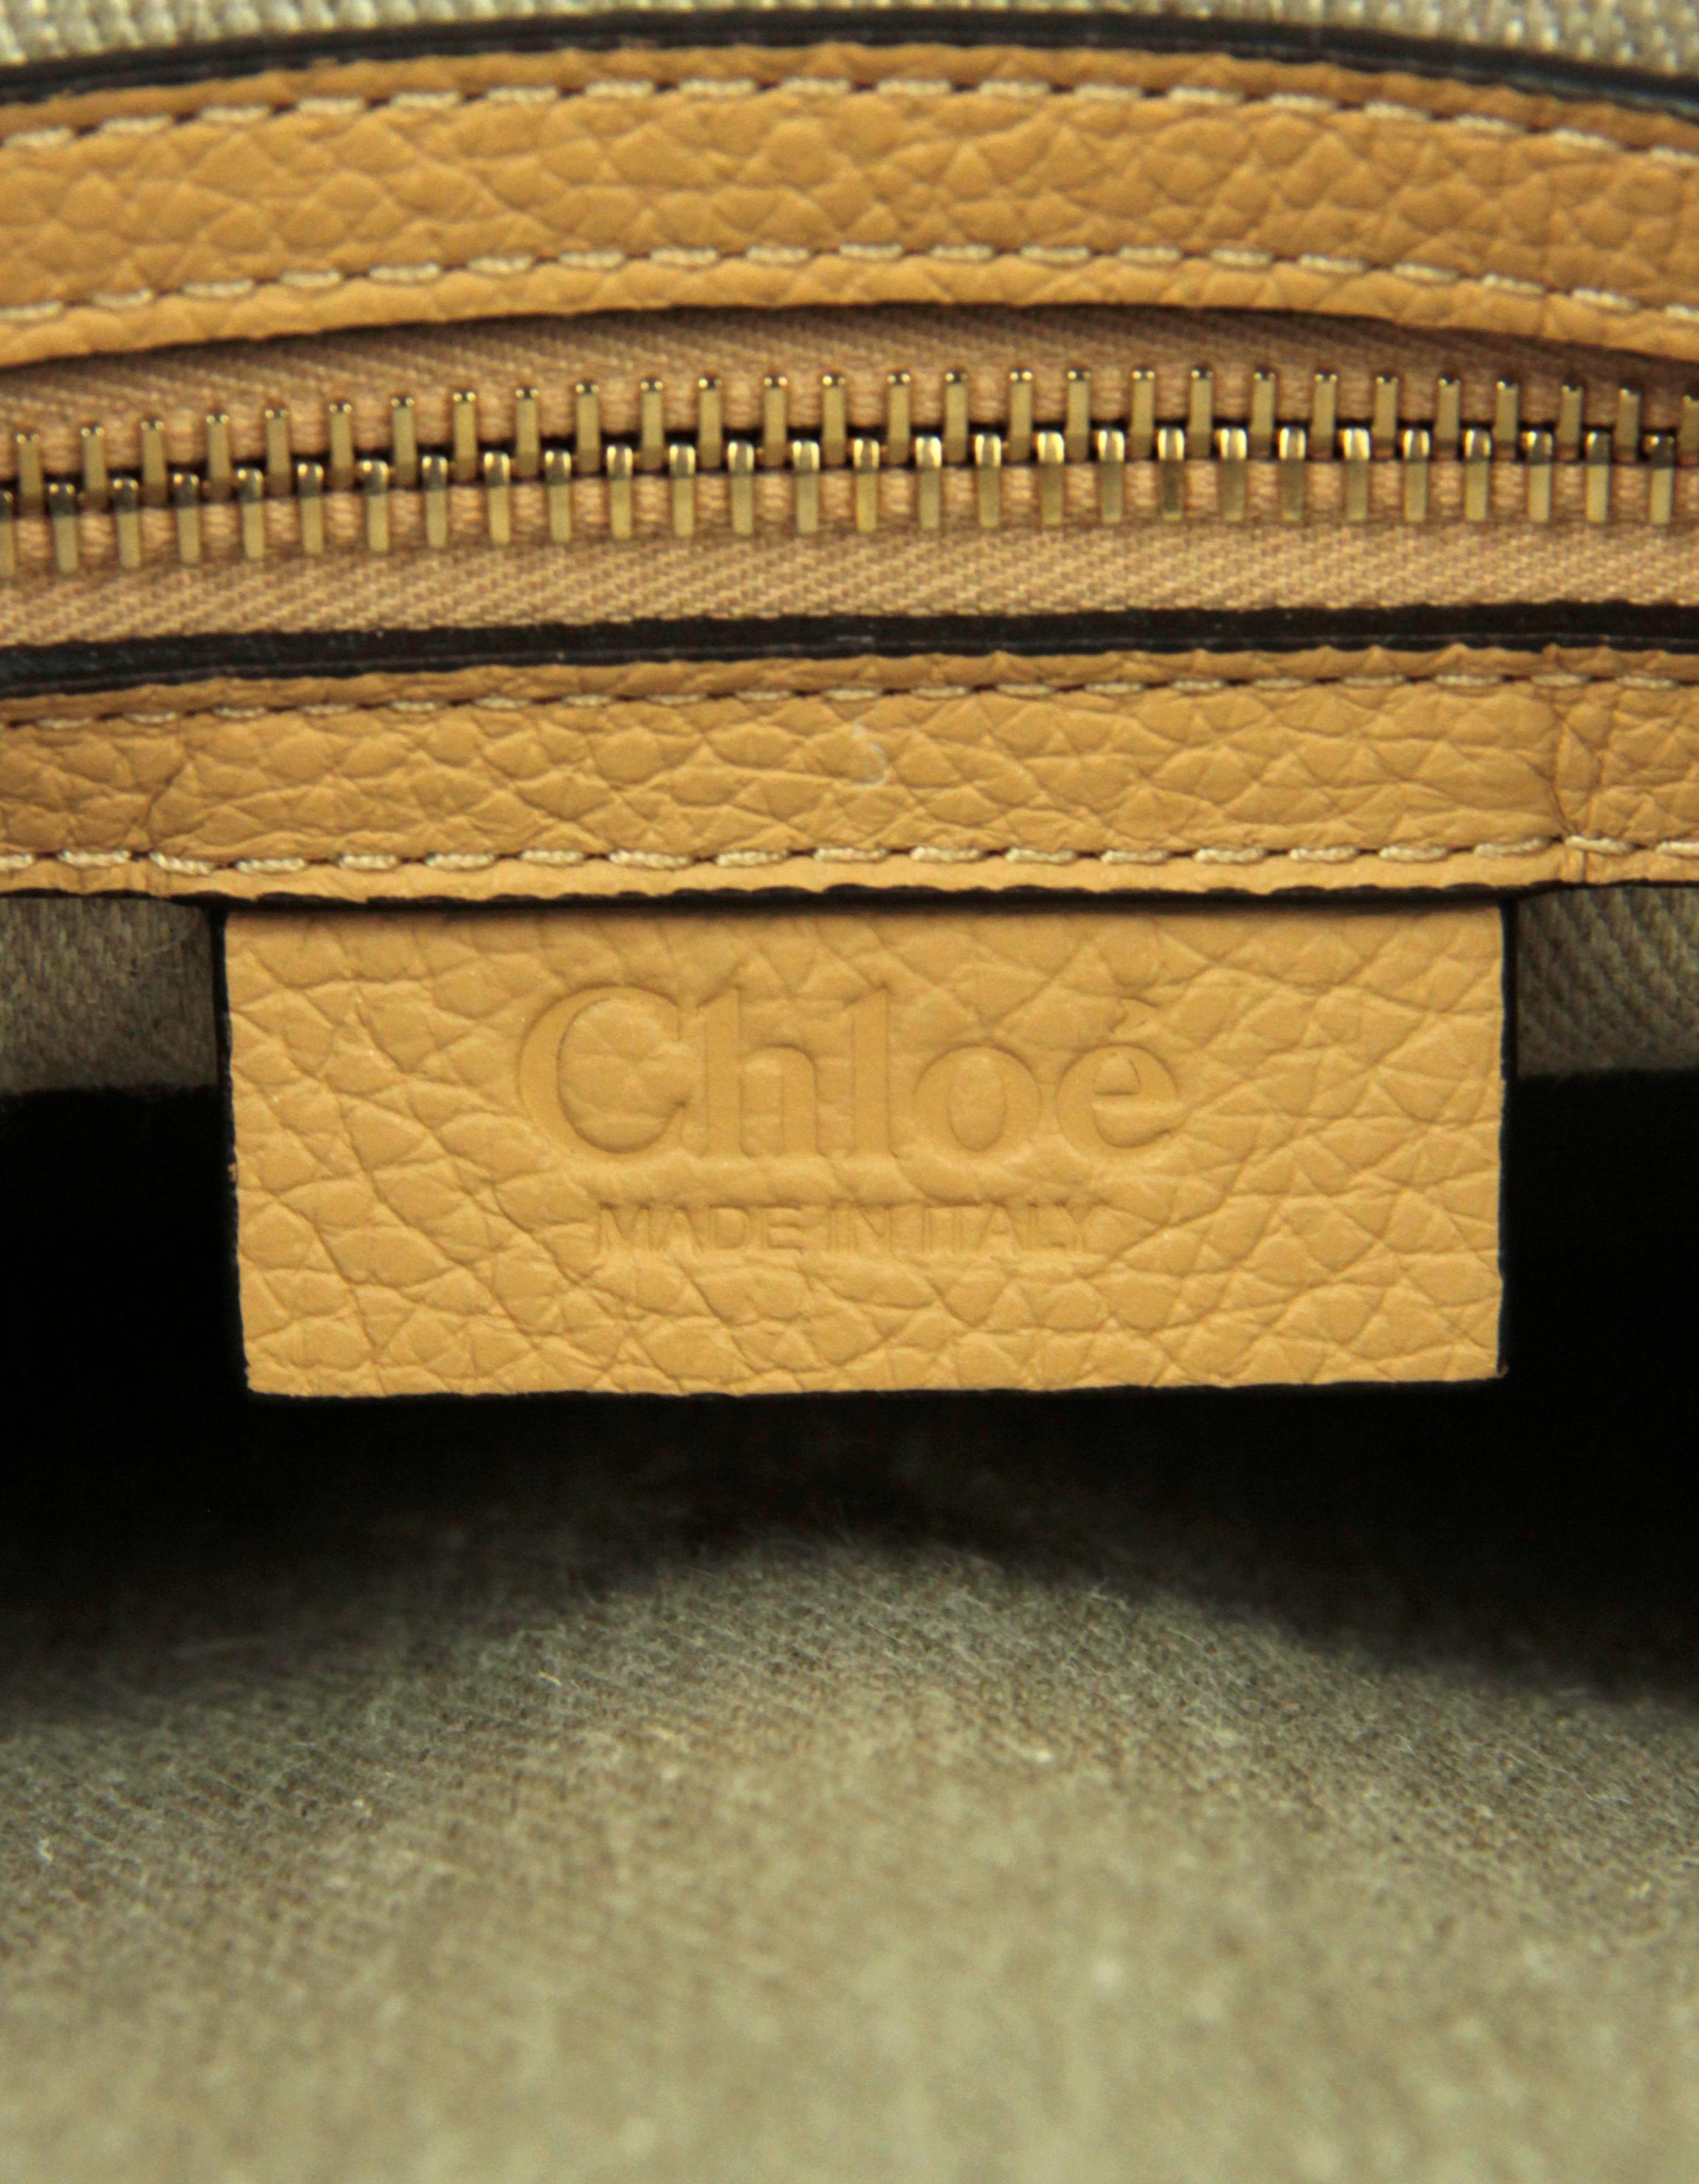 Chloe Soft Tan Leather Medium Marcie Satchel Crossbody Bag 4